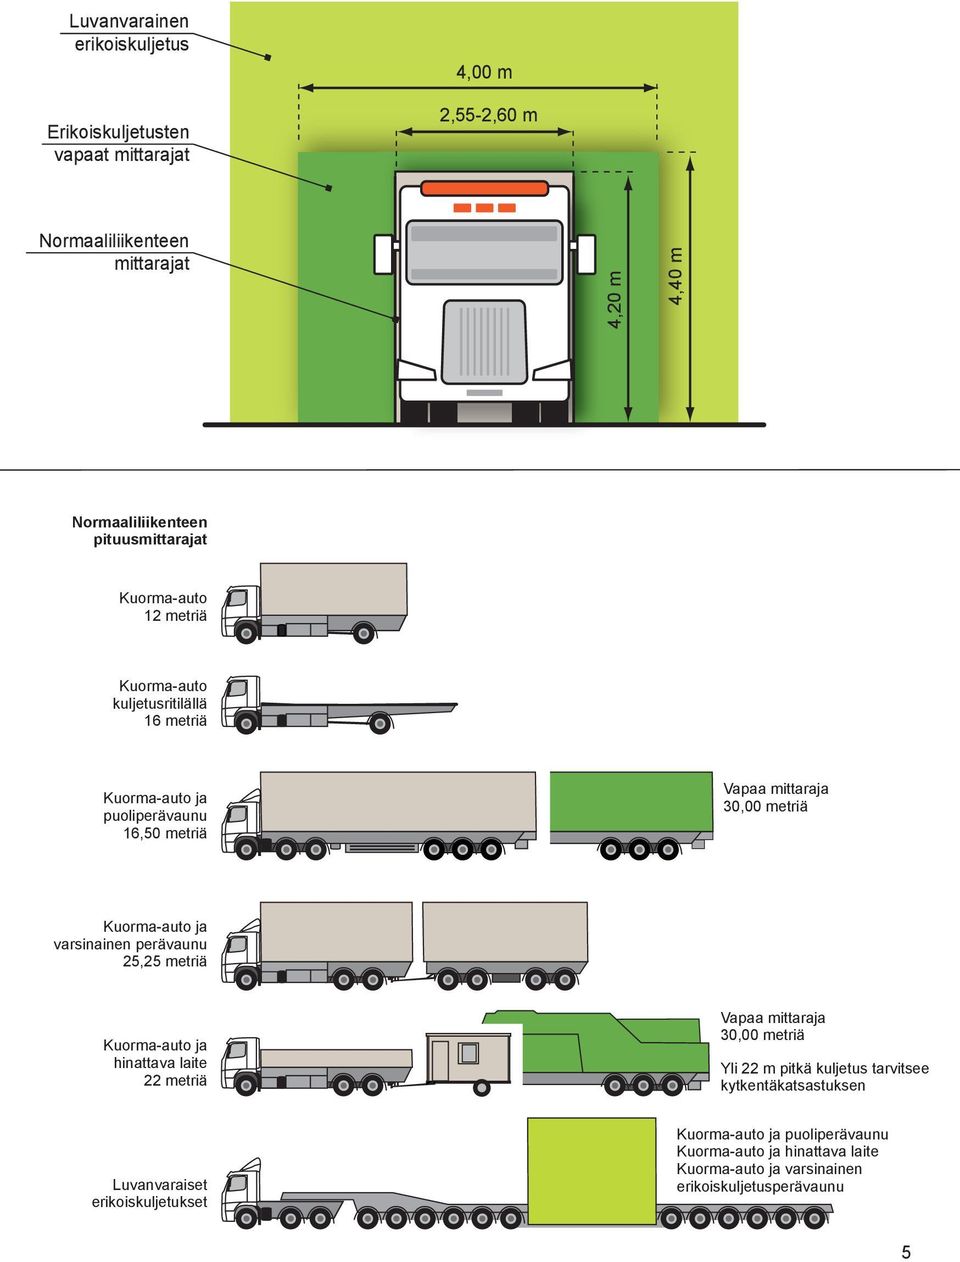 Kuorma-auto ja varsinainen perävaunu 25,25 metriä Kuorma-auto ja hinattava laite 22 metriä Vapaa mittaraja 30,00 metriä Yli 22 m pitkä kuljetus tarvitsee